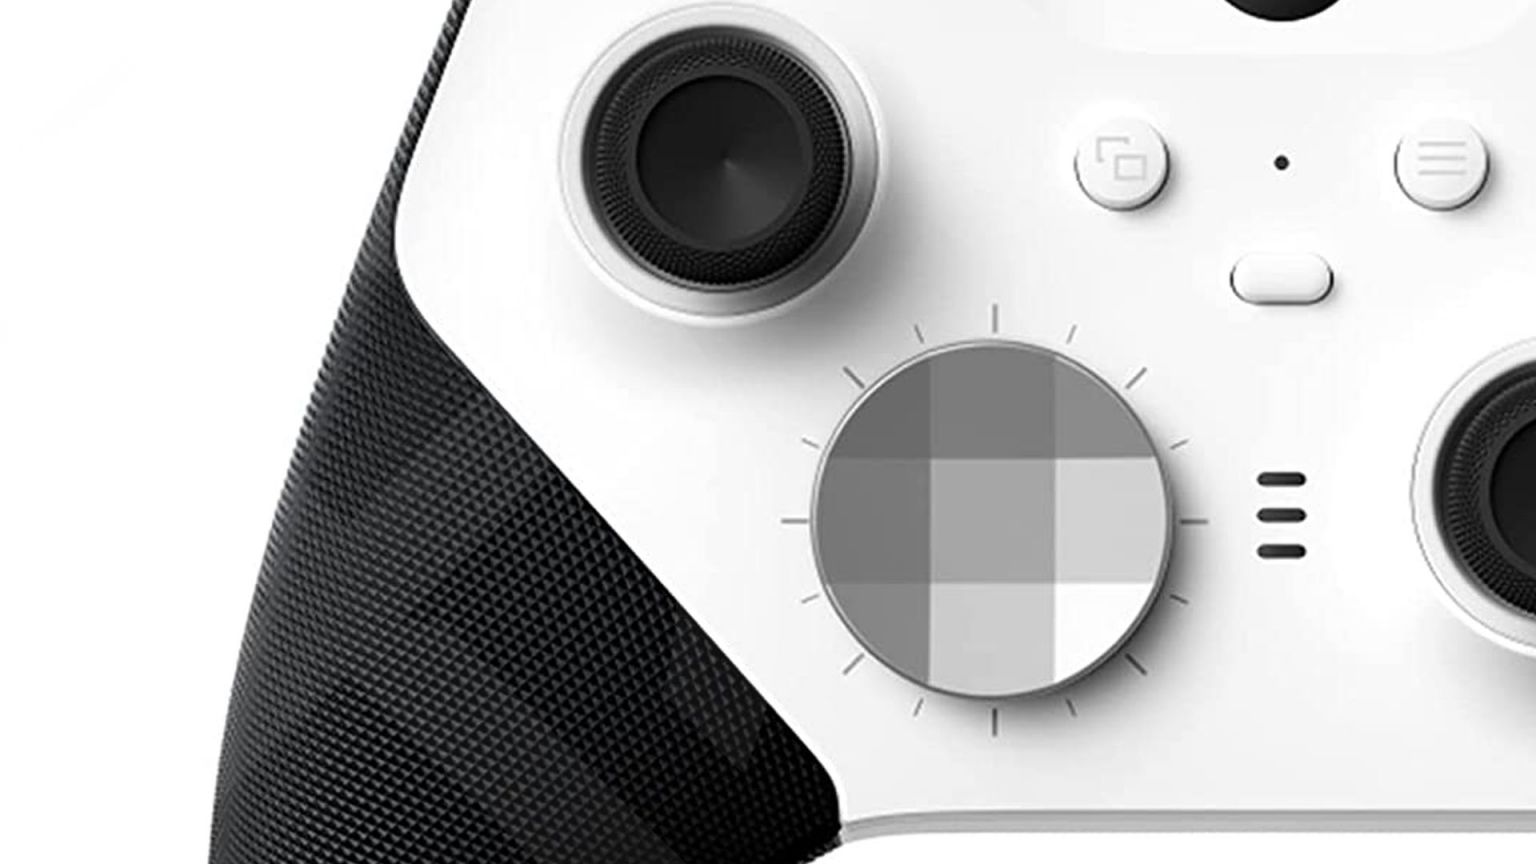 Xbox Elite Wireless Controller Series 2 White